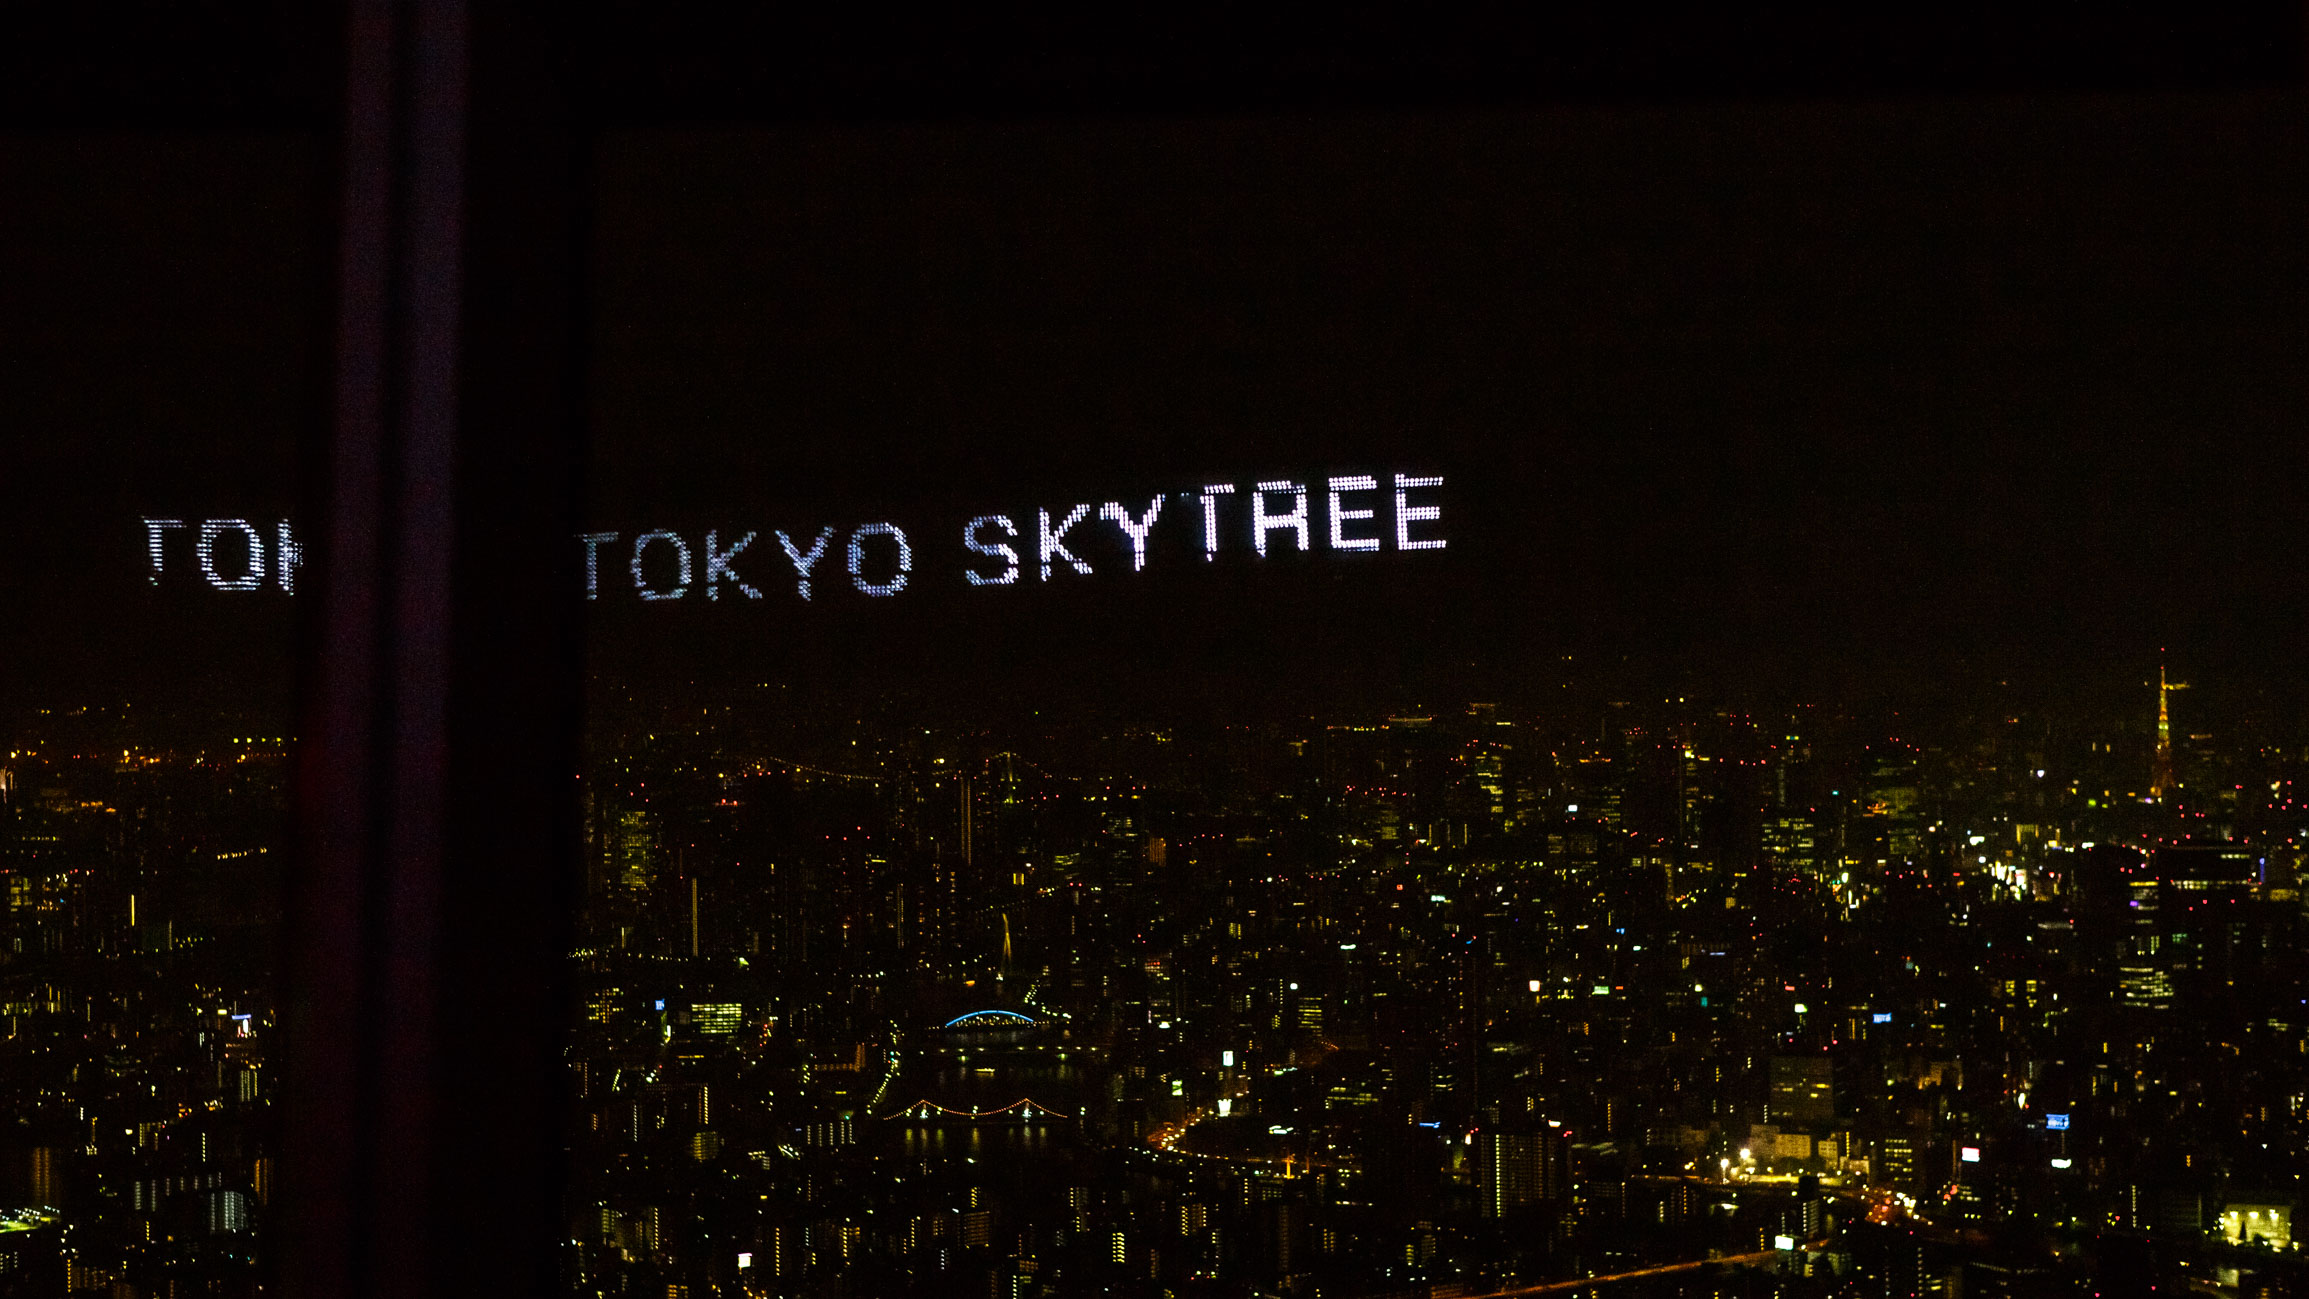 /Guewen/galeries/public/Voyages/Japon/Tokyo/Skytree-Tower/450/Skytree_59.jpg